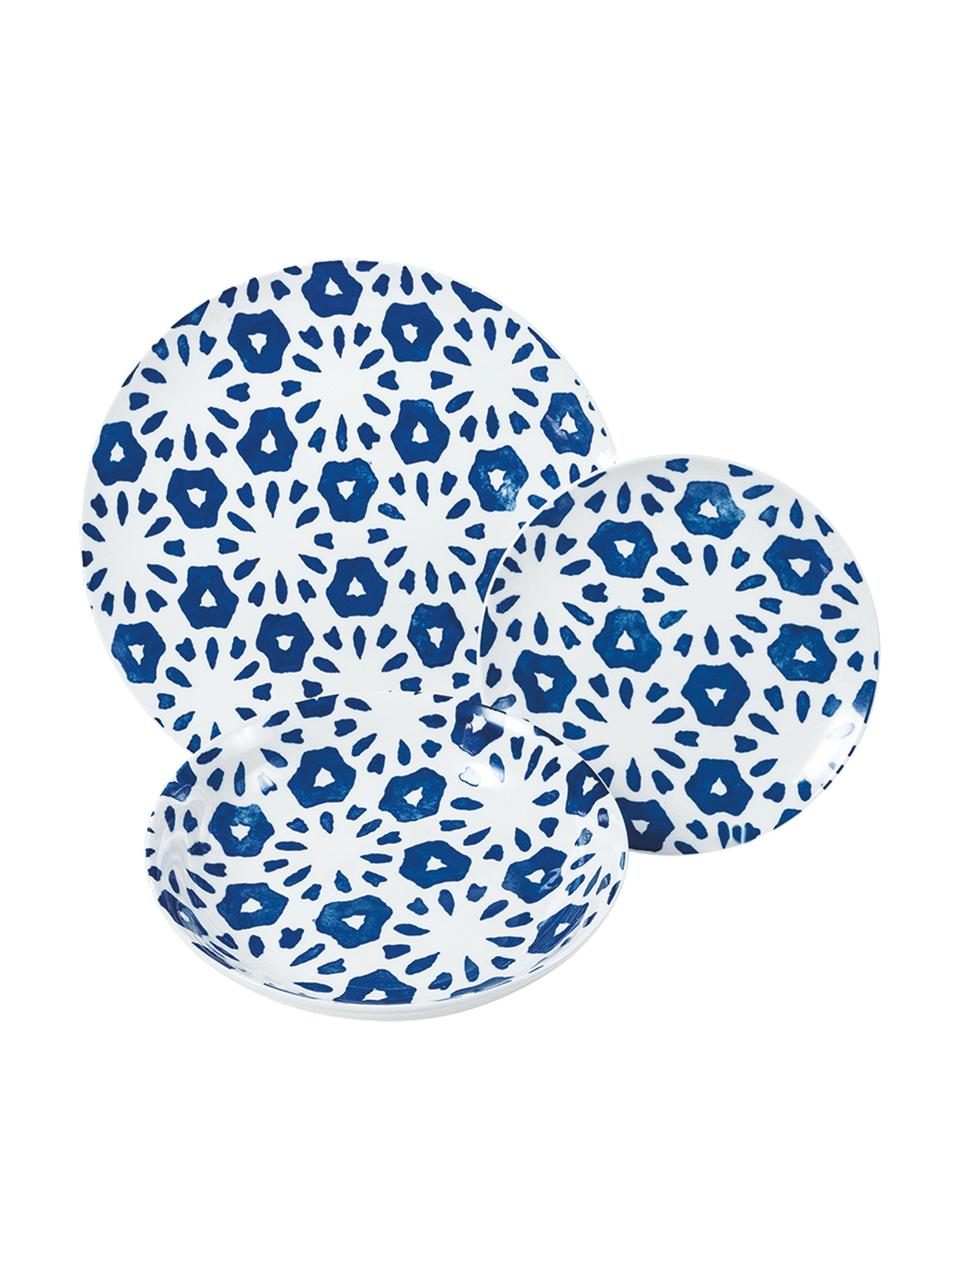 Gemustertes Geschirr-Set Bodrum in Blau/Weiß, 6 Personen (18-tlg.), Porzellan, Blau, Weiß, Set mit verschiedenen Größen